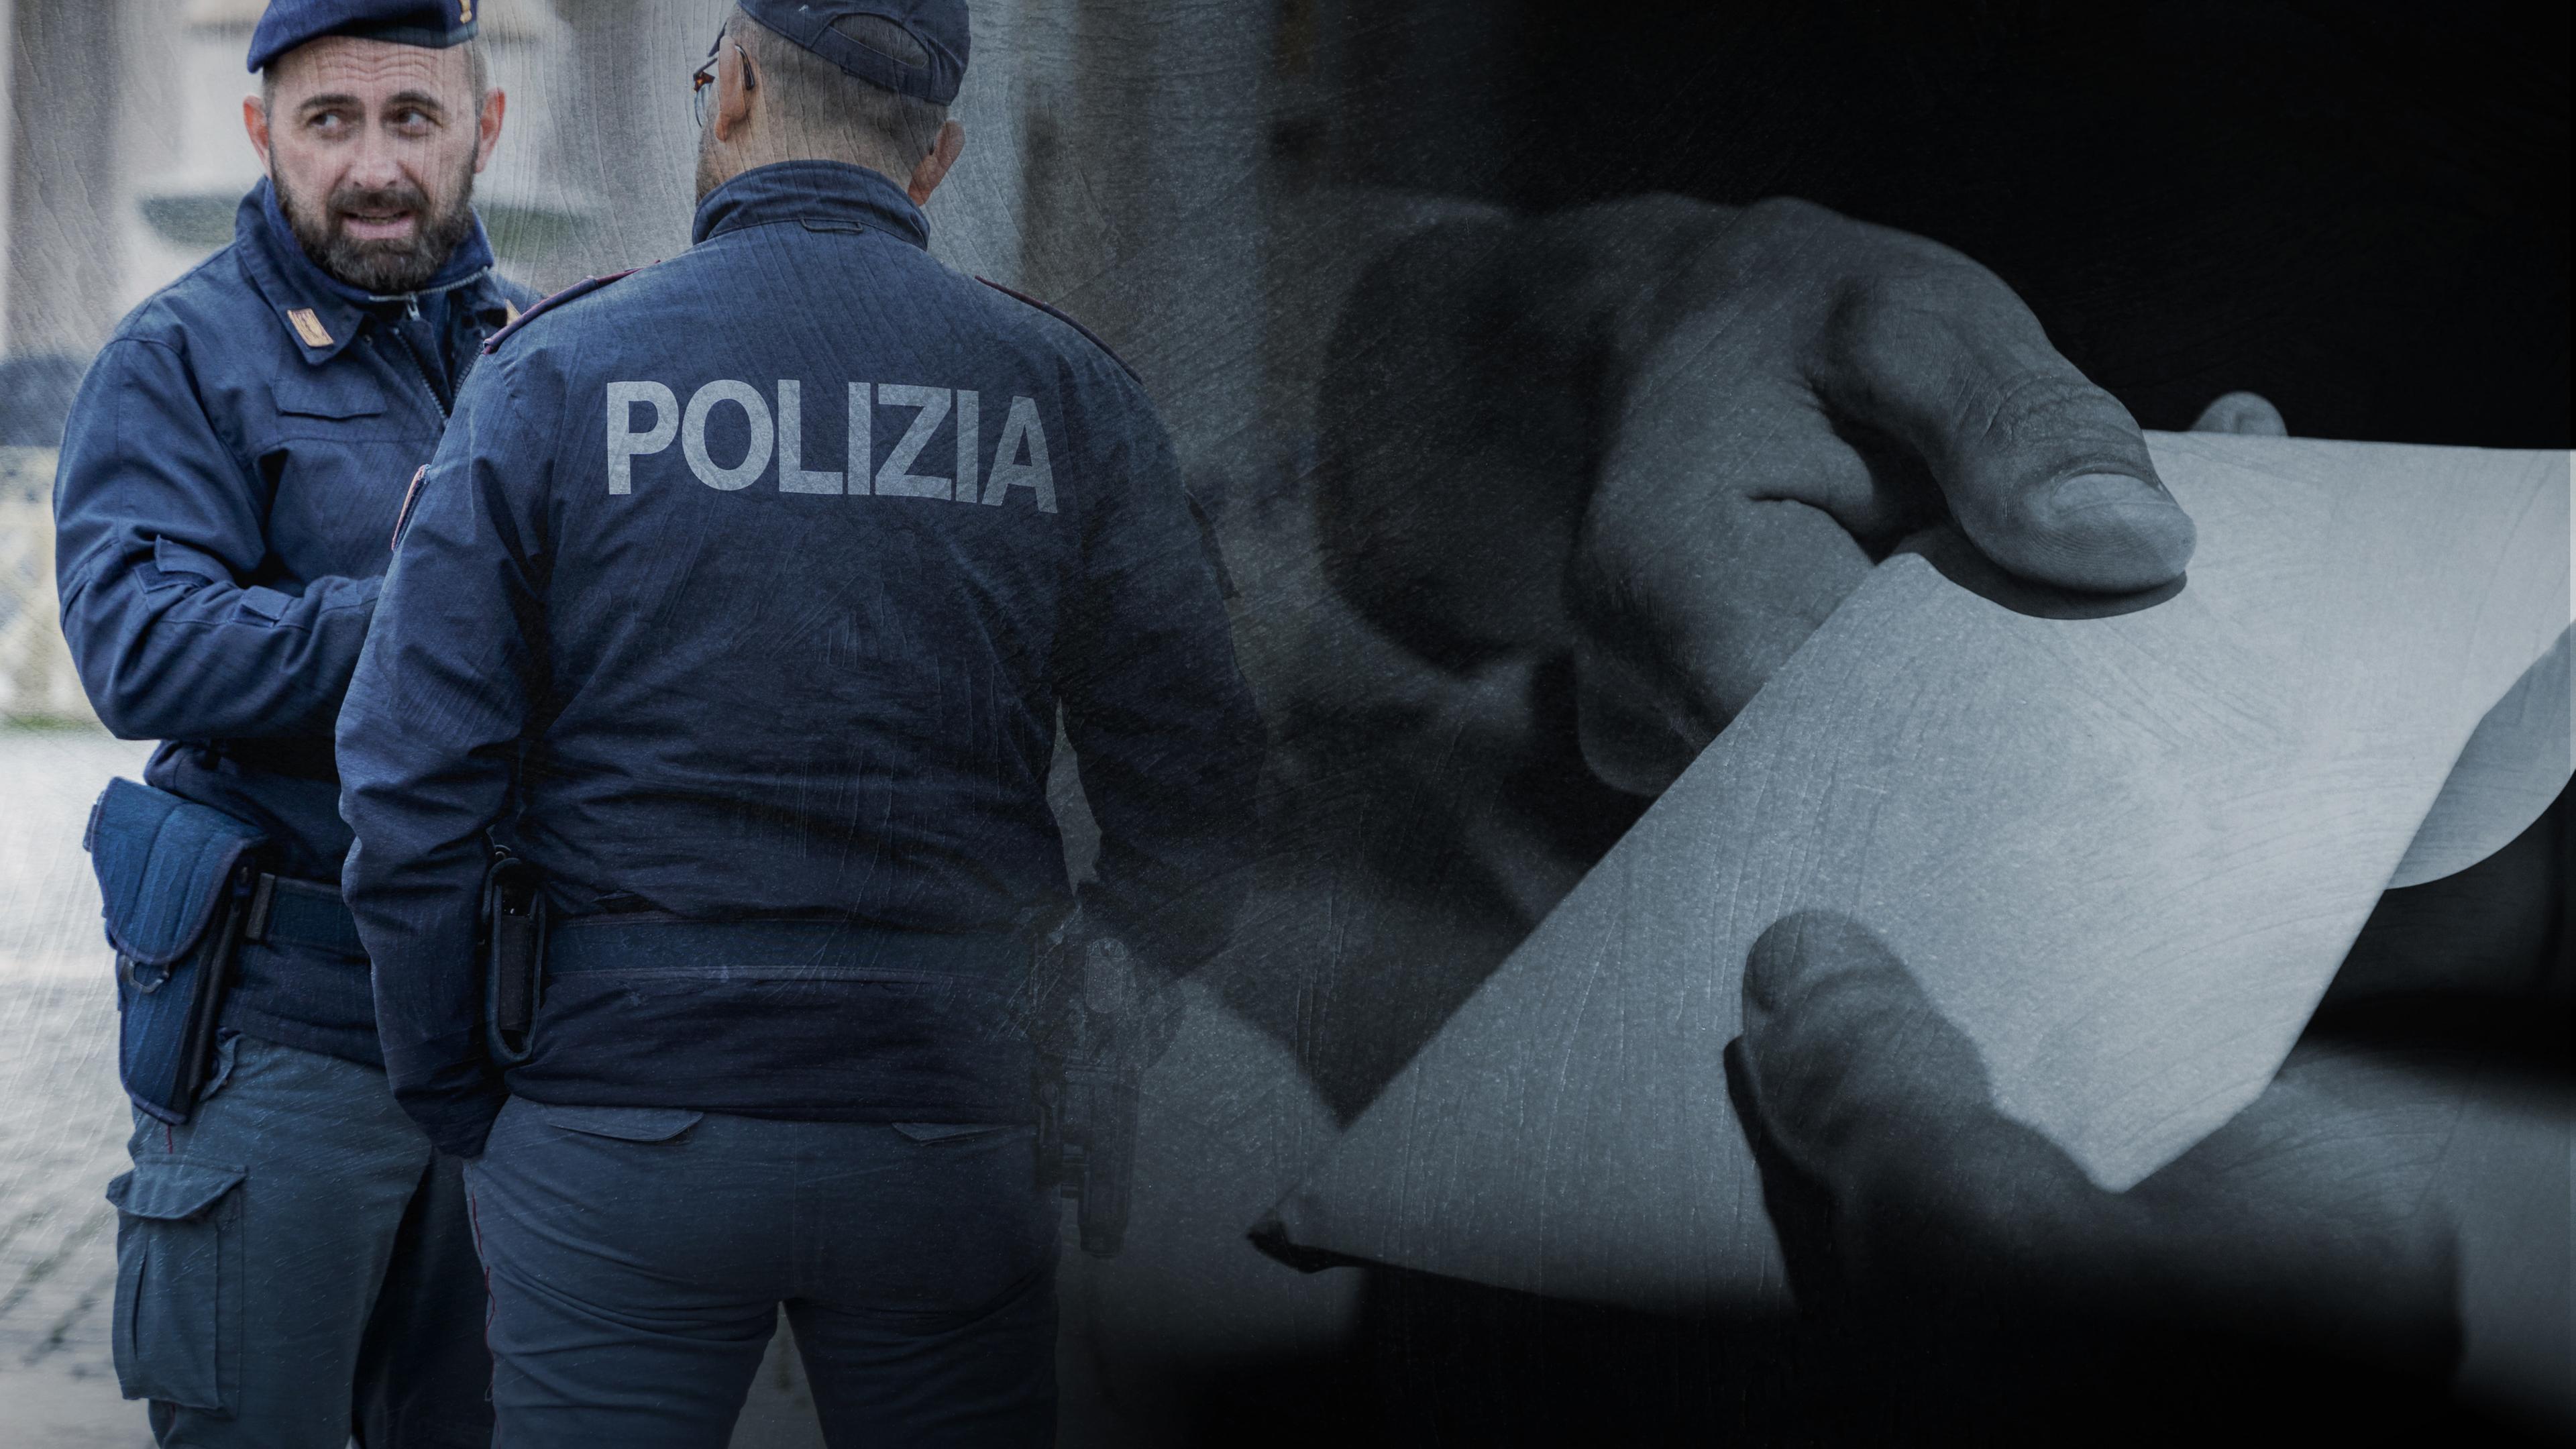 Collage. Zwei italienische Polizisten miteinander im Gespräch (links) - zwei Hände halten einen Umschlag - Nahaufnahme (rechts).